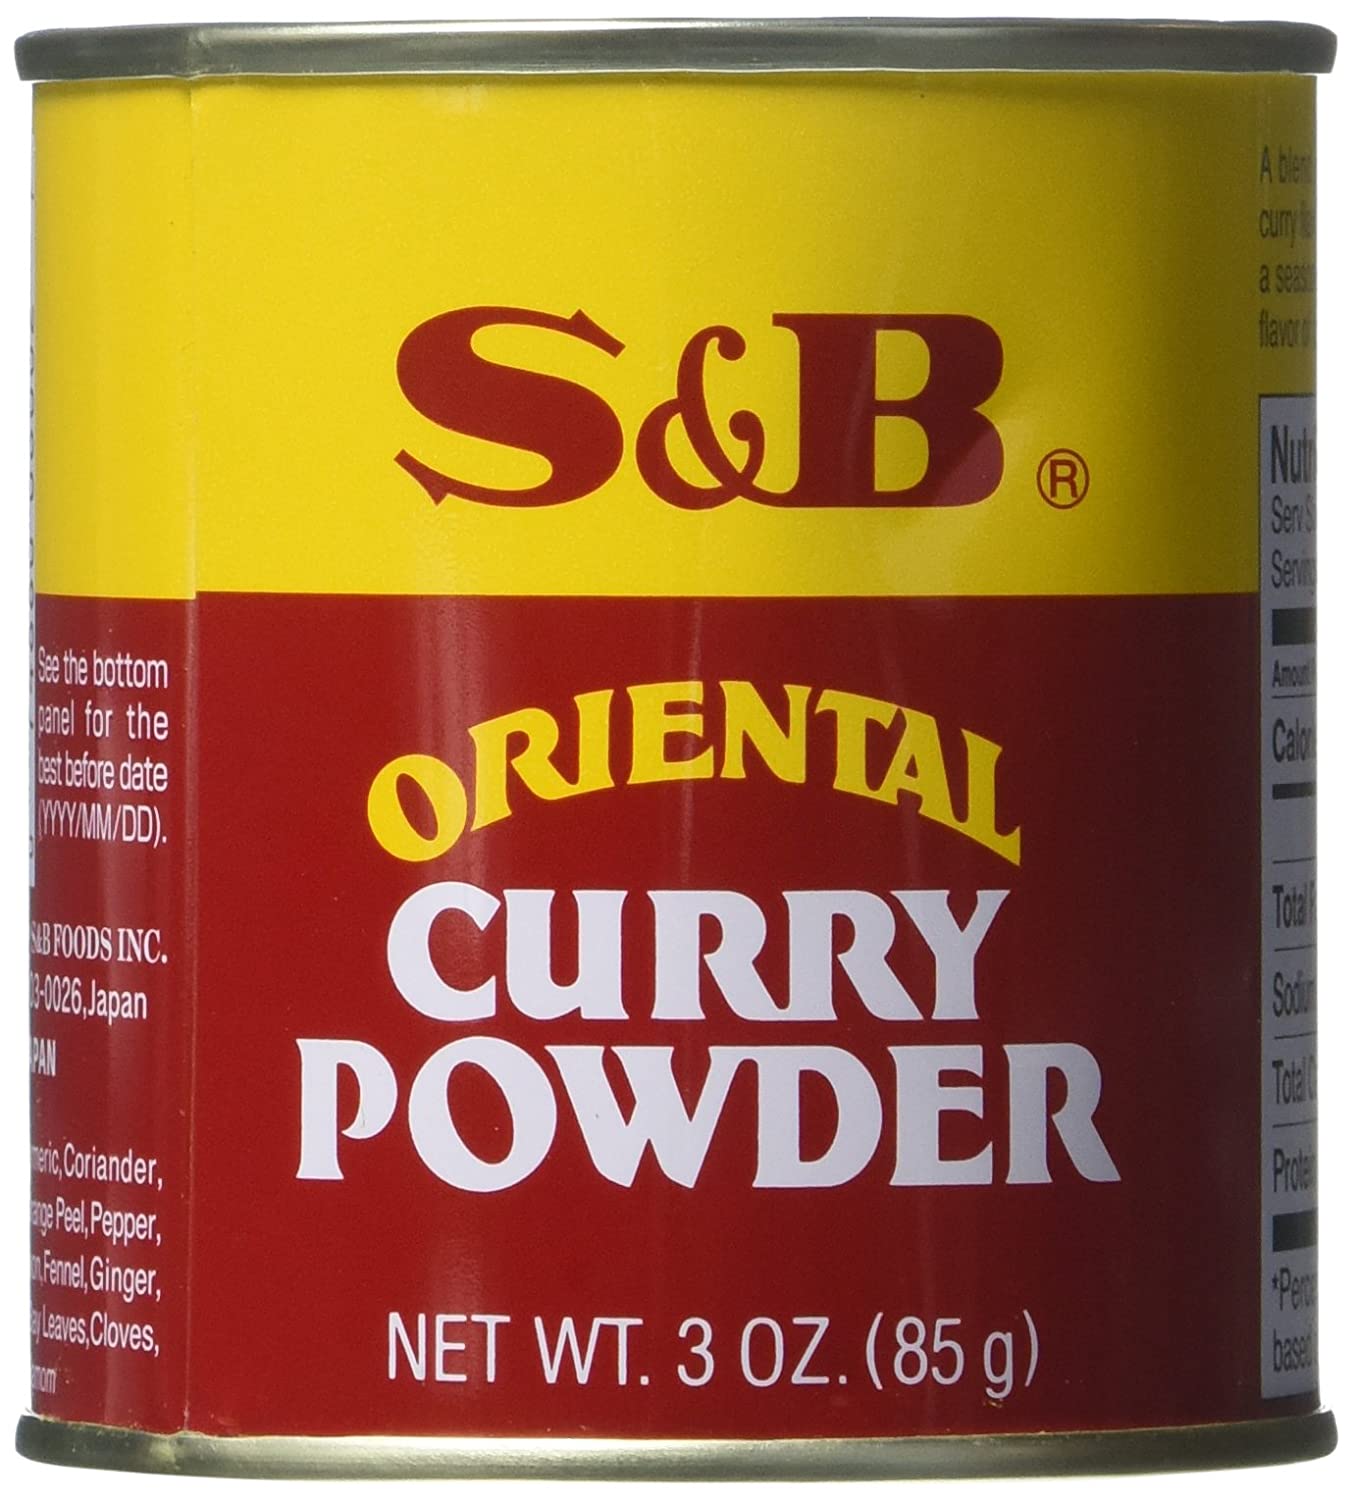 สุดยอดทาโกะยากิราดหน้าผงกะหรี่ญี่ปุ่น- S&B Curry Powder